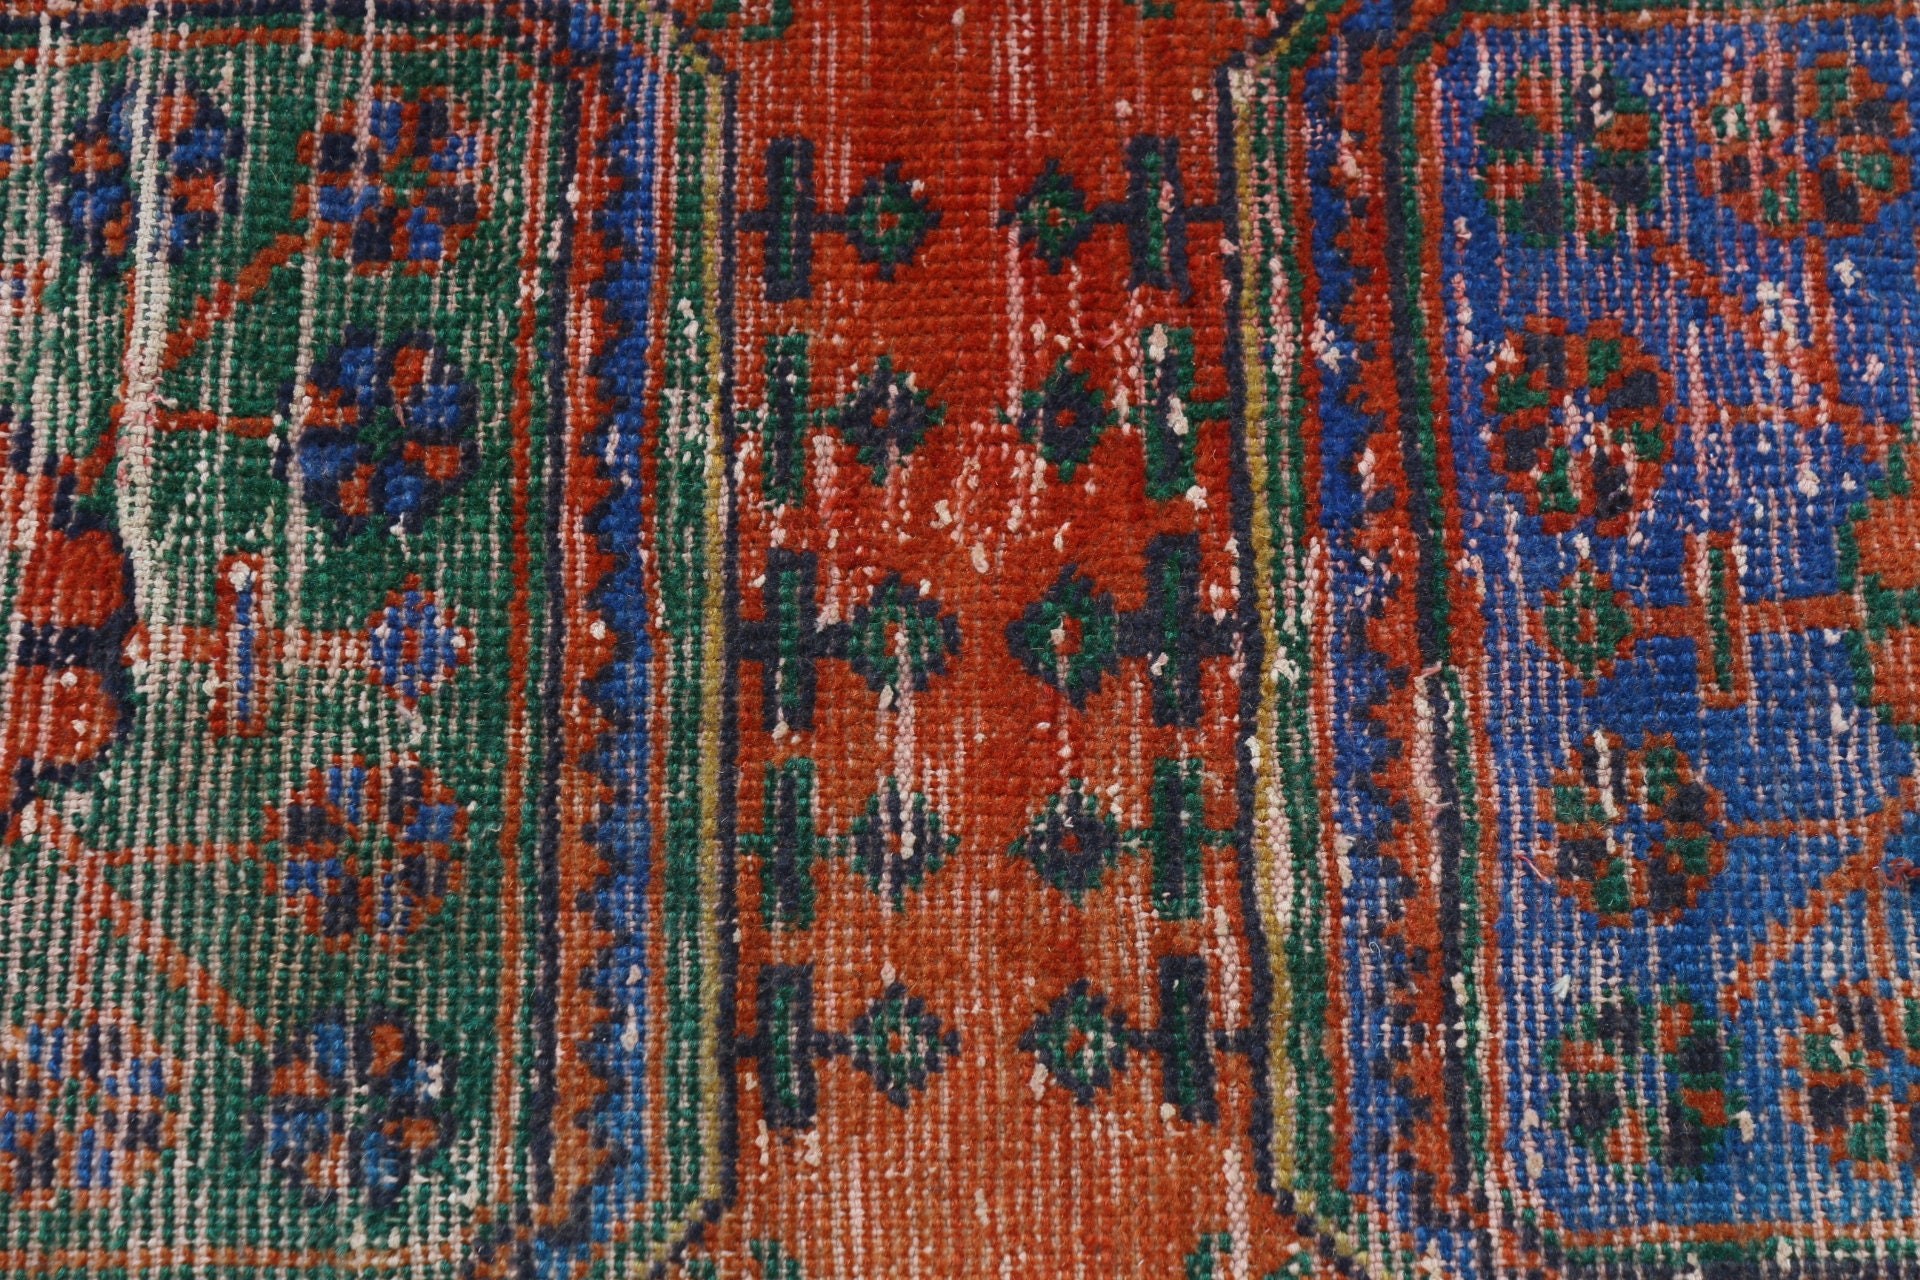 Oushak Rug, Red Cool Rugs, Turkish Rug, Vintage Rugs, Corridor Rug, Stair Rug, Rugs for Kitchen, Floor Rug, 2.8x11.7 ft Runner Rug, Art Rug